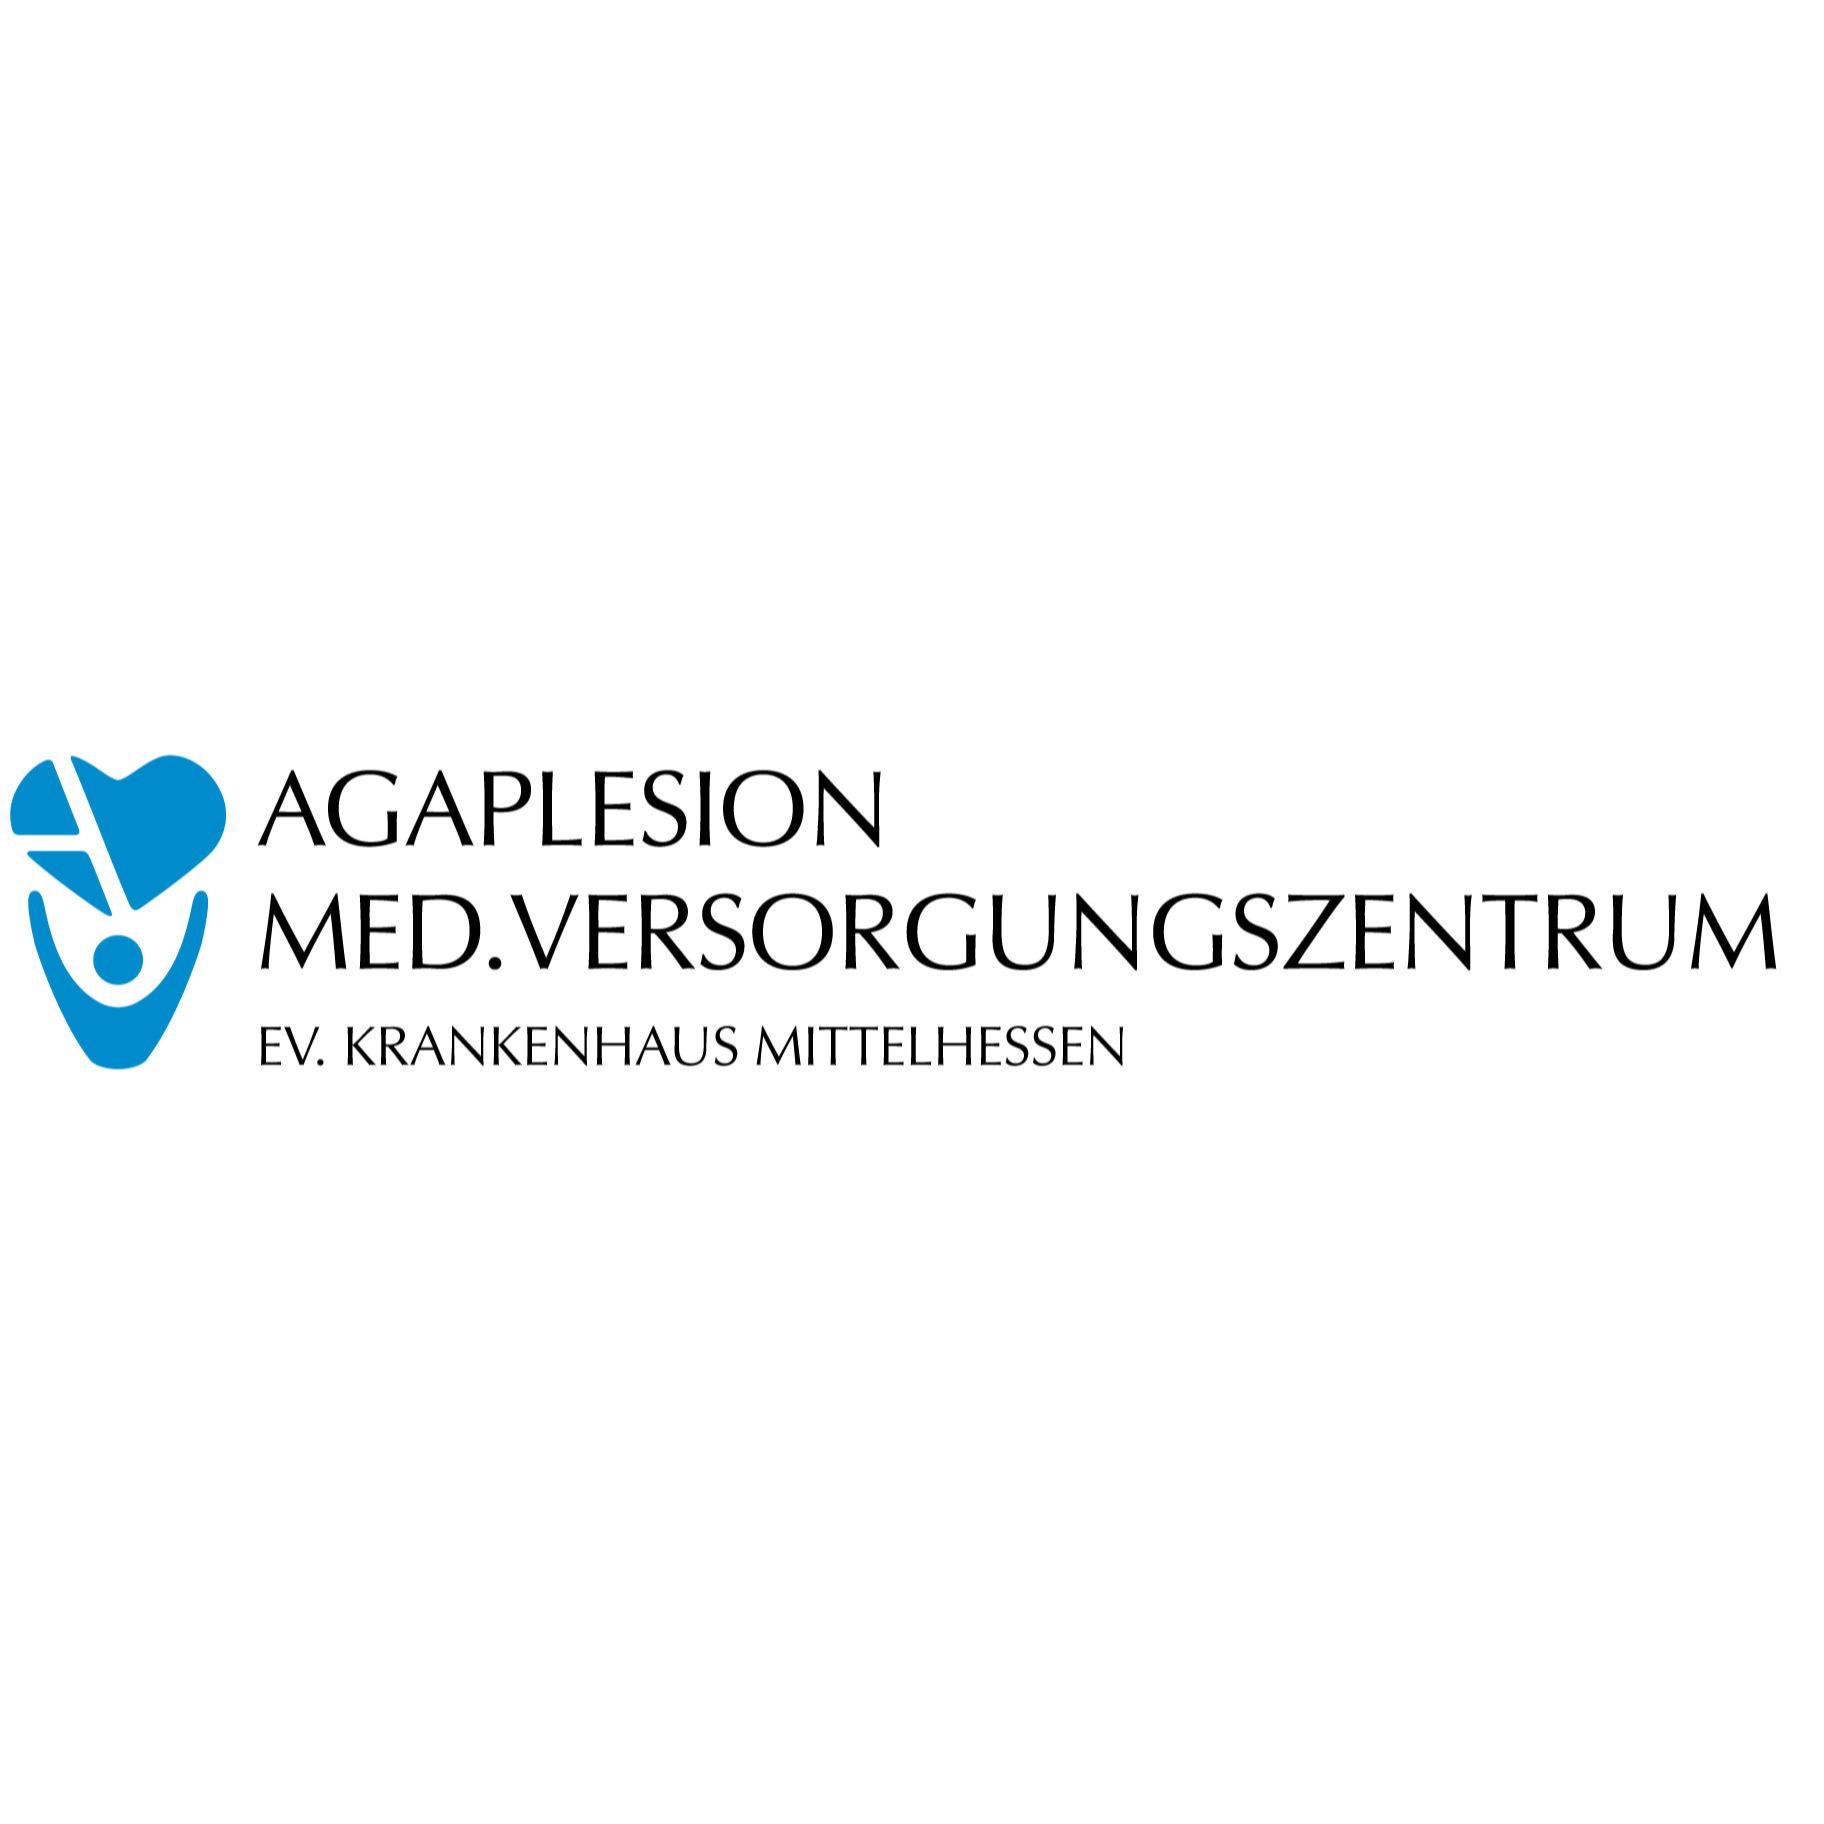 AGAPLESION MED. VERSORGUNGSZENTRUM am AGAPLESION EV. KRANKENHAUS MITTELHESSEN in Gießen - Logo